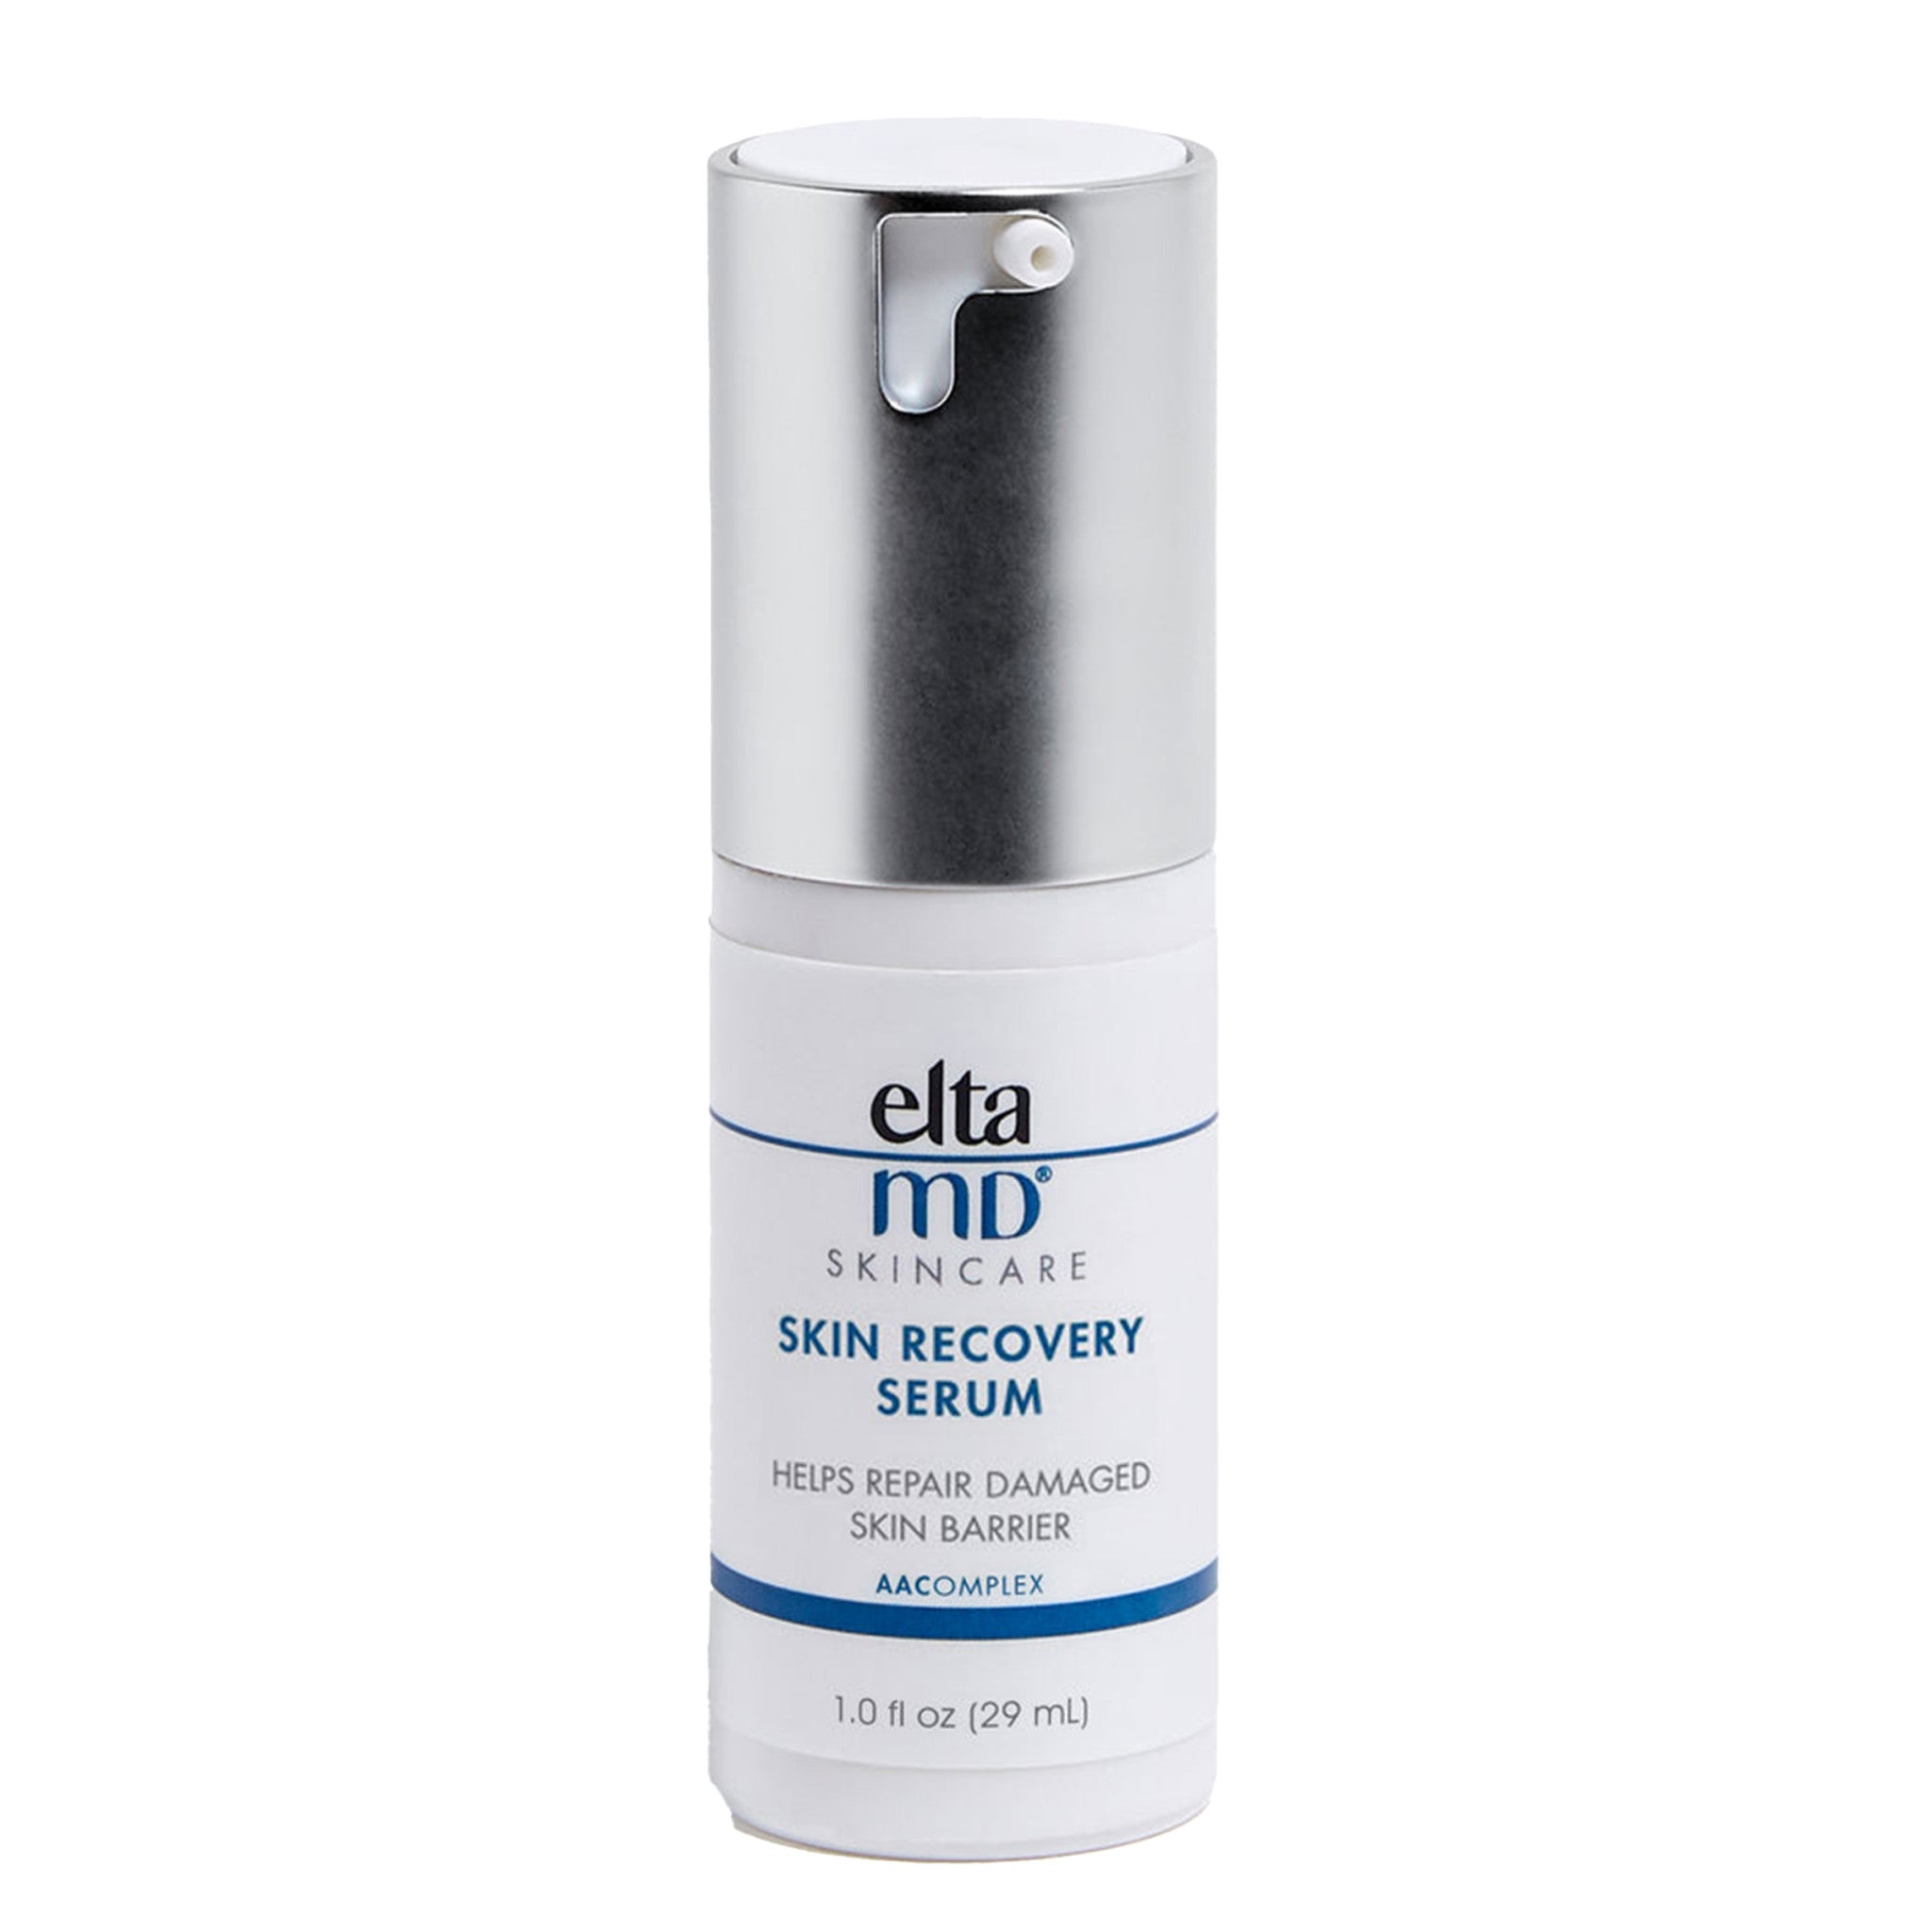 EltaMD Skin Recovery Serum main image.